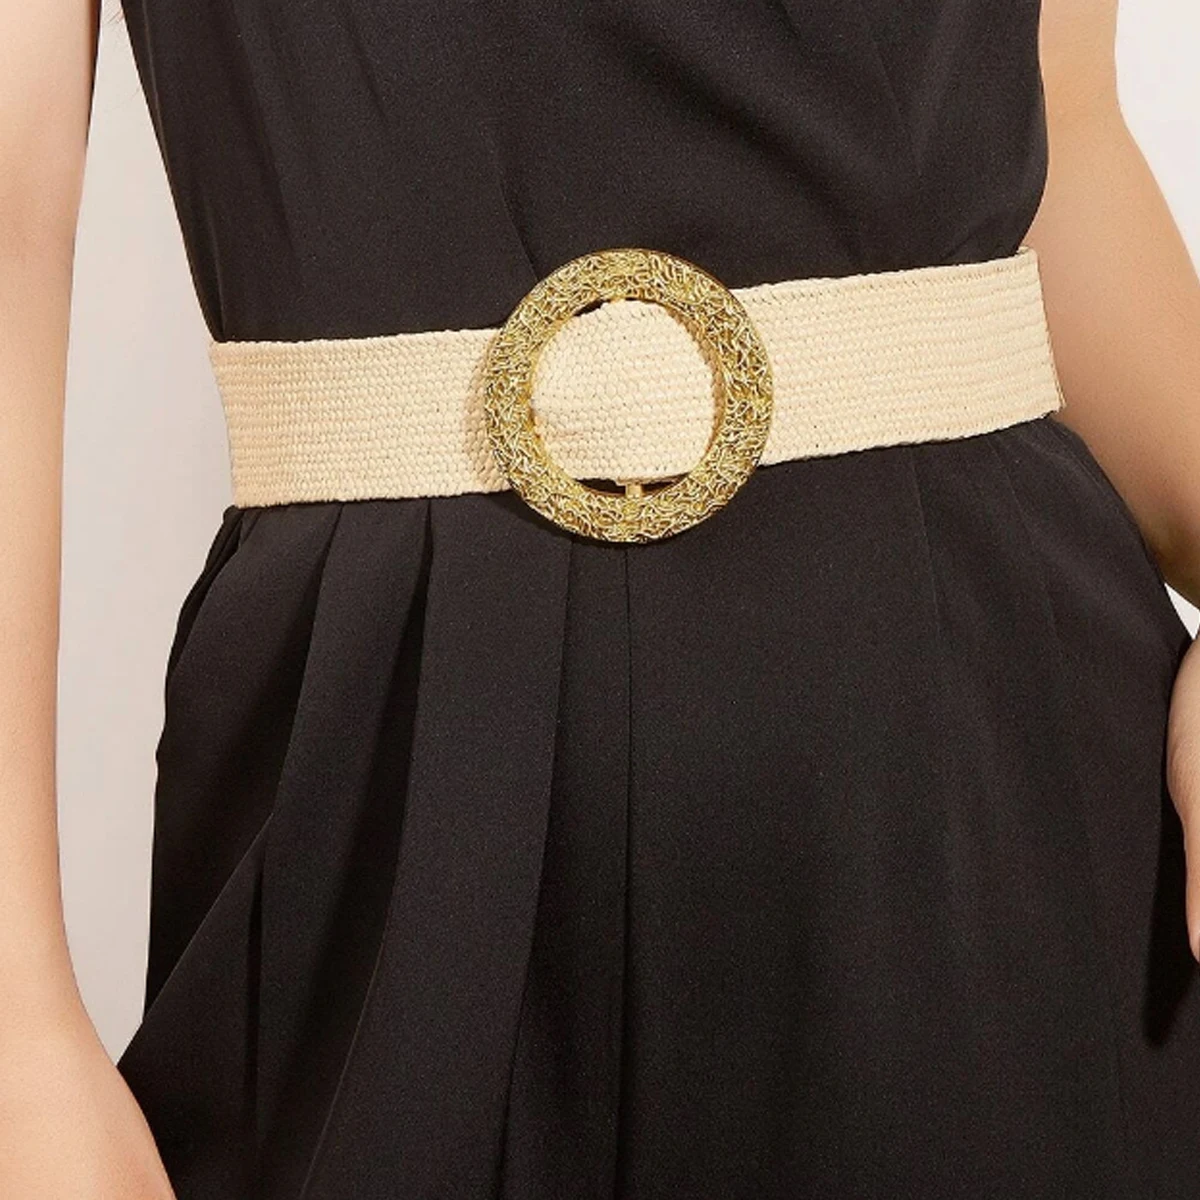 Cinturones elásticos trenzados con hebilla redonda dorada para mujer, cinturón ancho bohemio de lino tejido, accesorios para cintura de verano, venta al por mayor